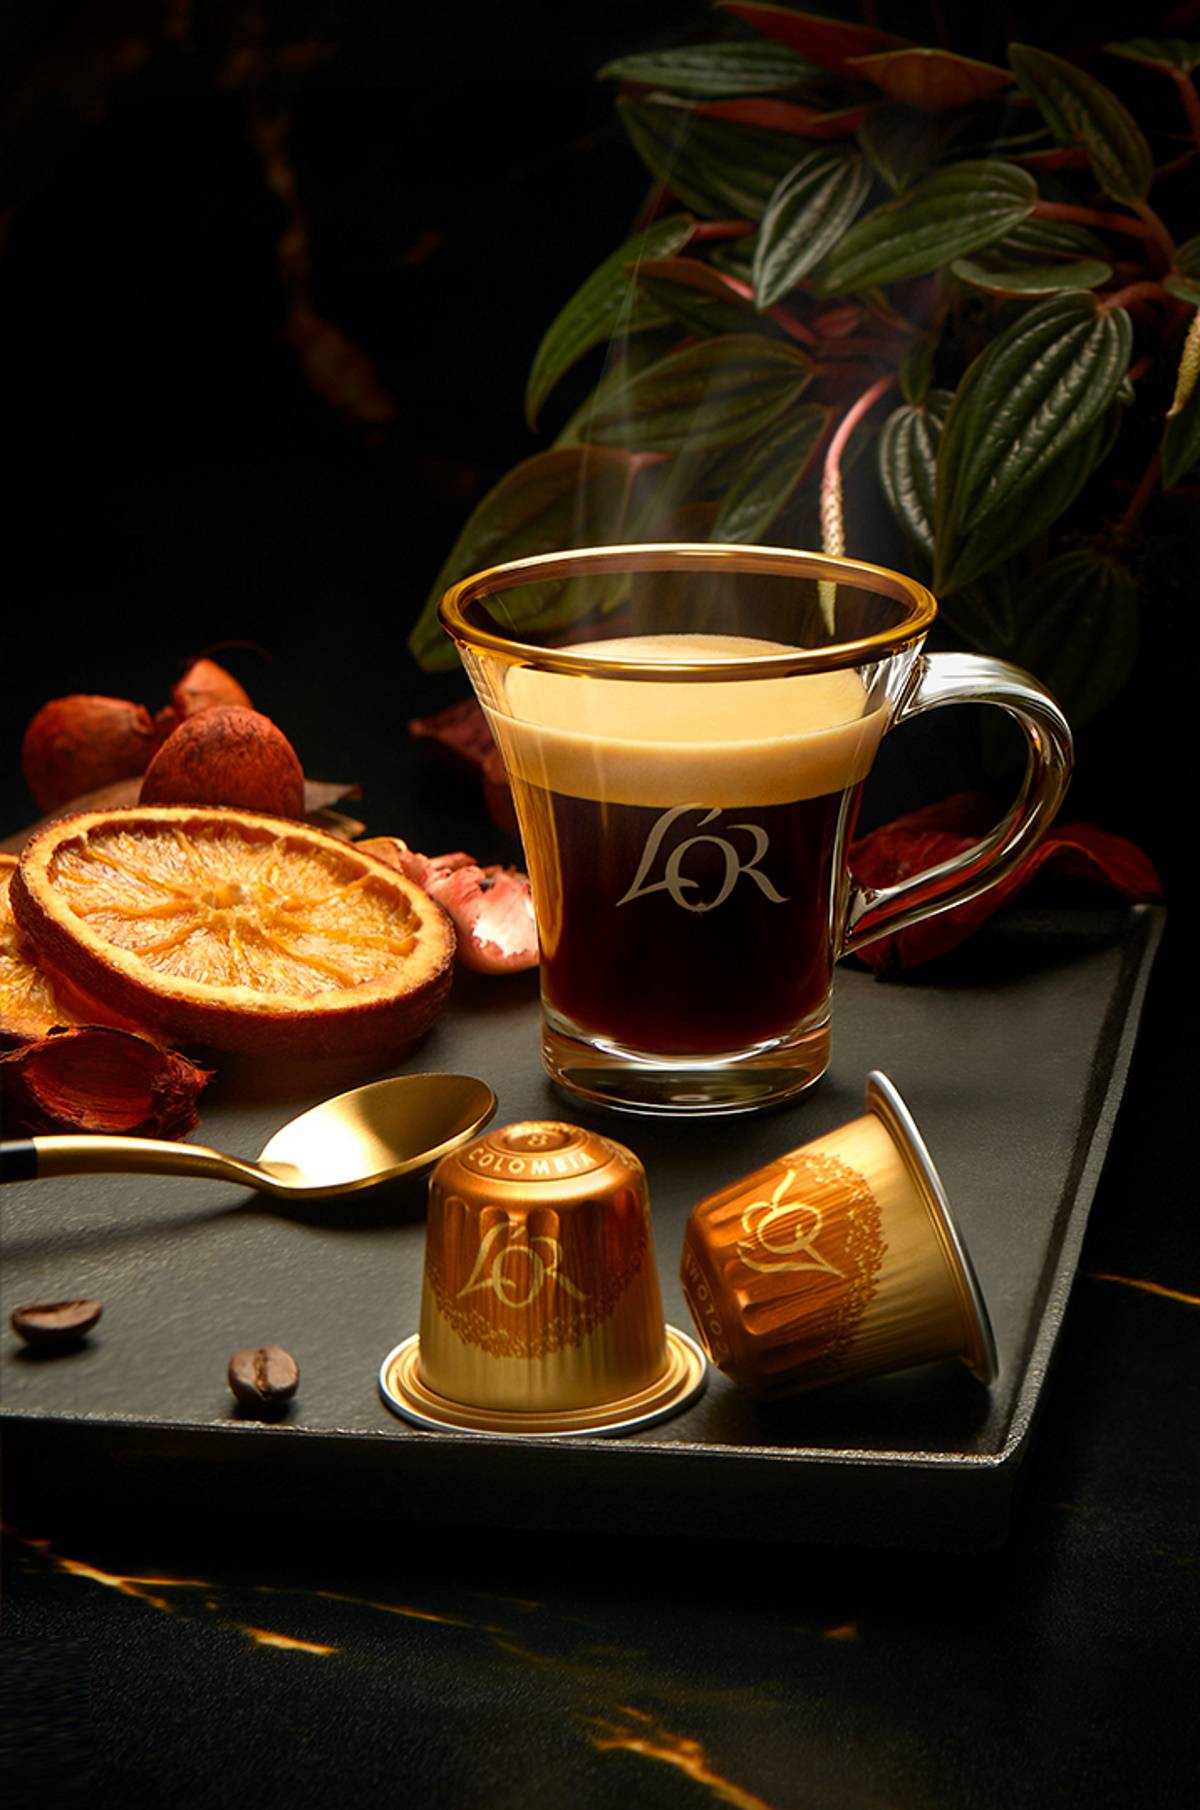 Kolekcja kaw L’OR Origins inspirowana odległymi zakątkami świata, L’OR Espresso Colombia